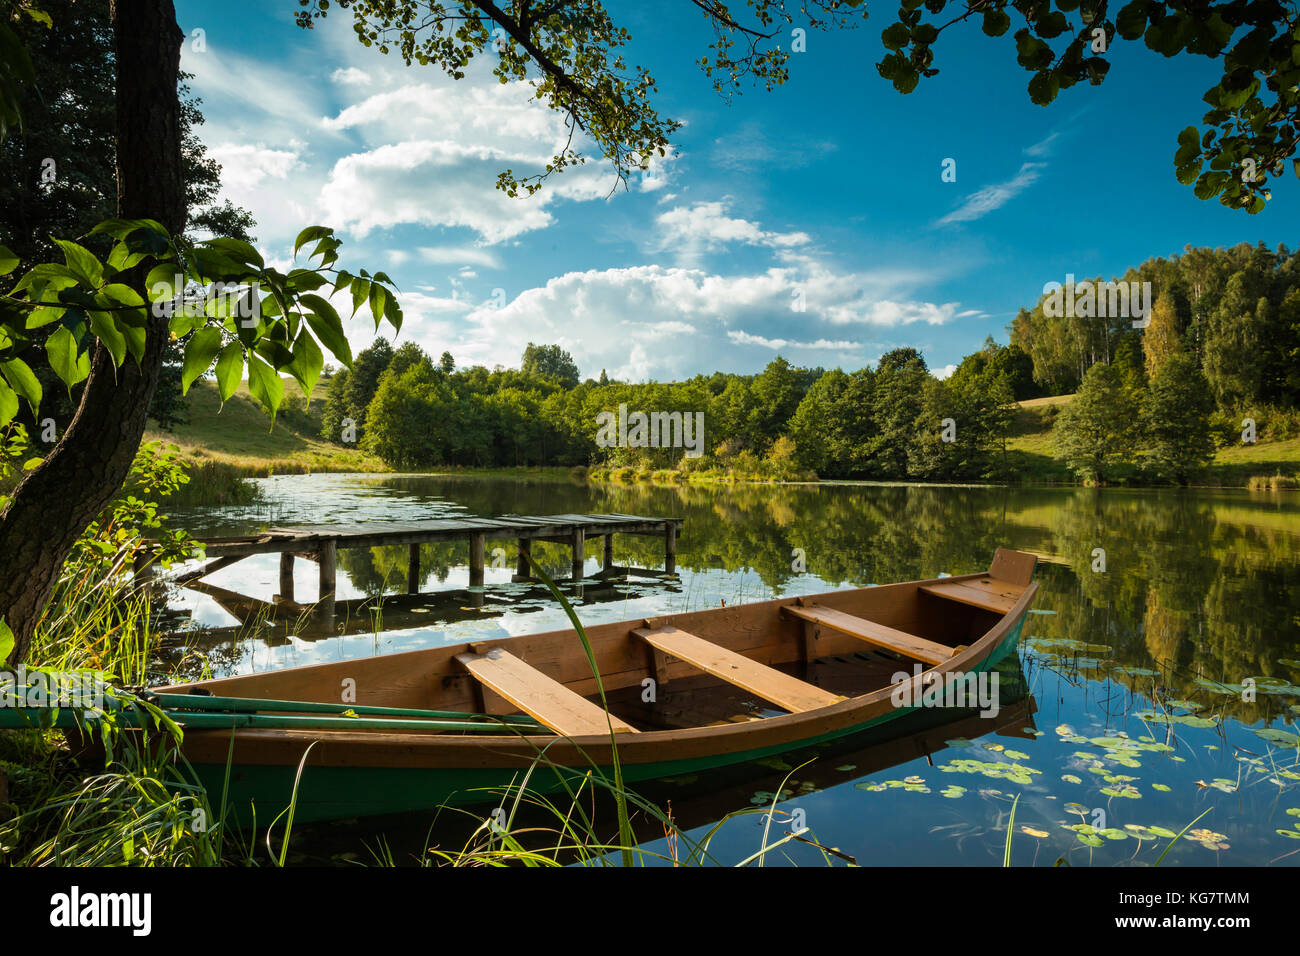 Am späten Nachmittag auf einem kleinen See in suwalki, Polen. Stockfoto